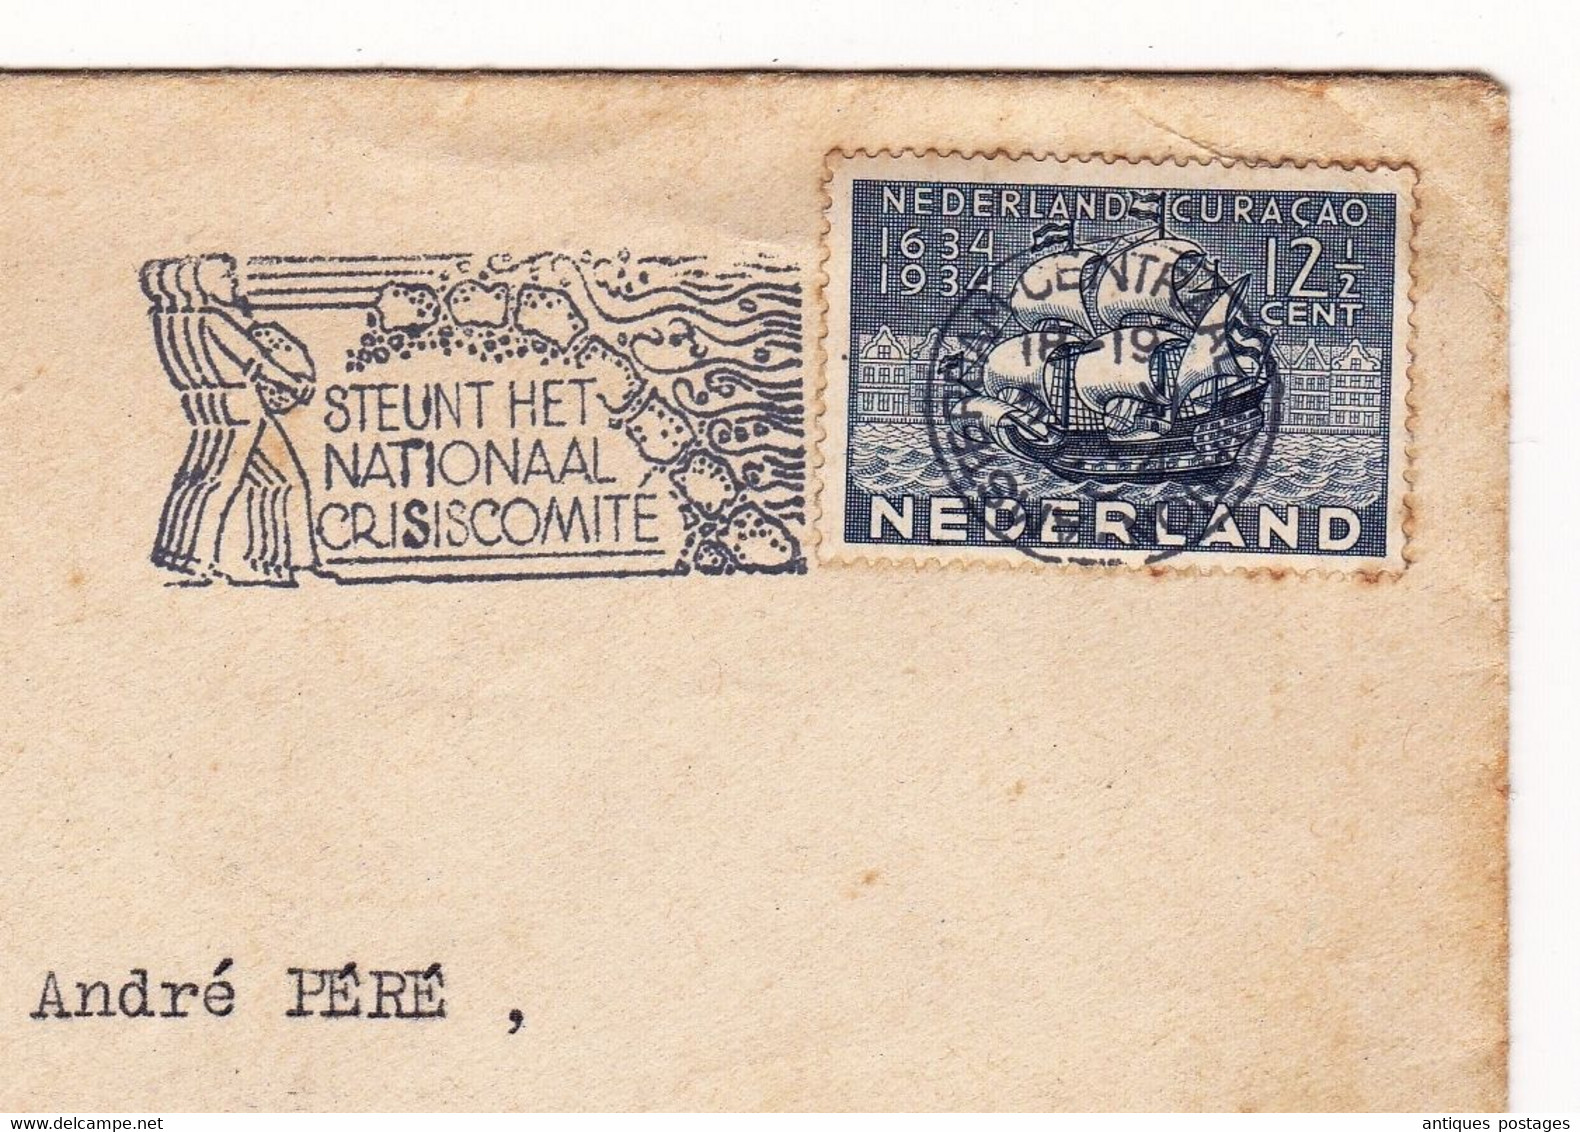 Nederland Amsterdam Curaçao Samadet Landes 1934 Steunt Het Nationaal Crisiscomite La Belle France Arènes De Nîmes - Postal History